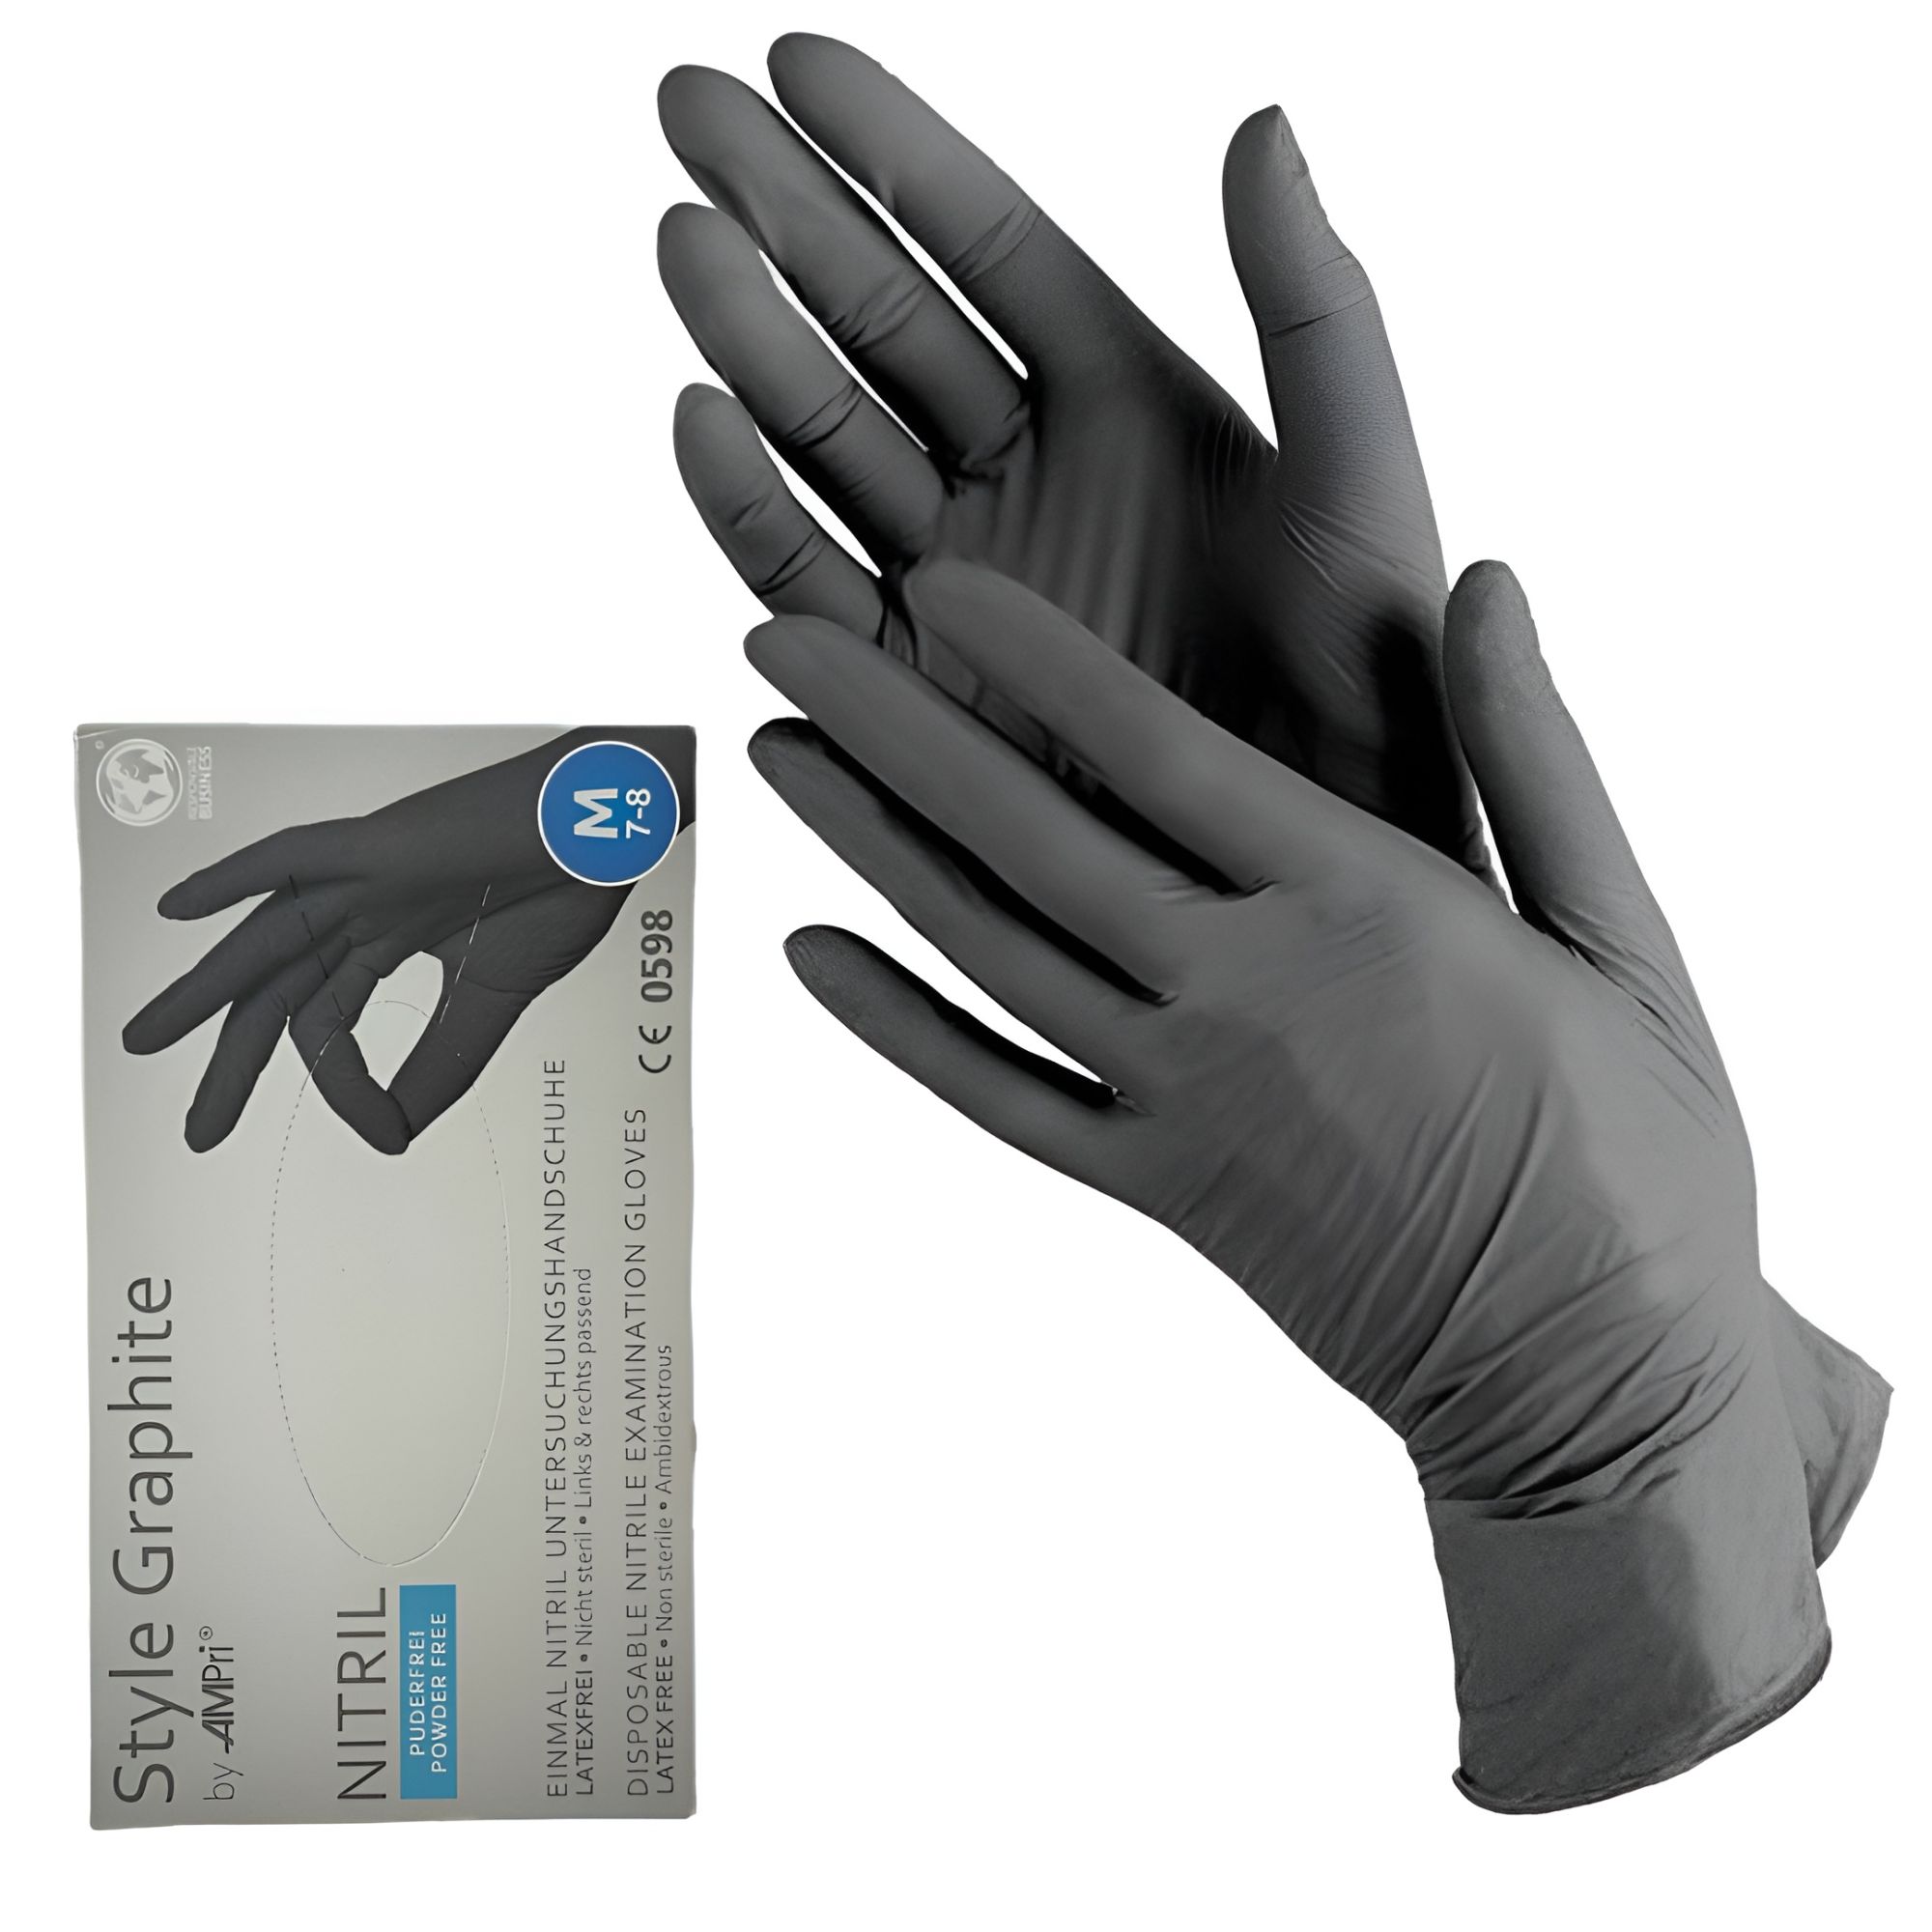 Перчатки STYLE by AMPri нитриловые, цвет Серый (Graphite), размер M